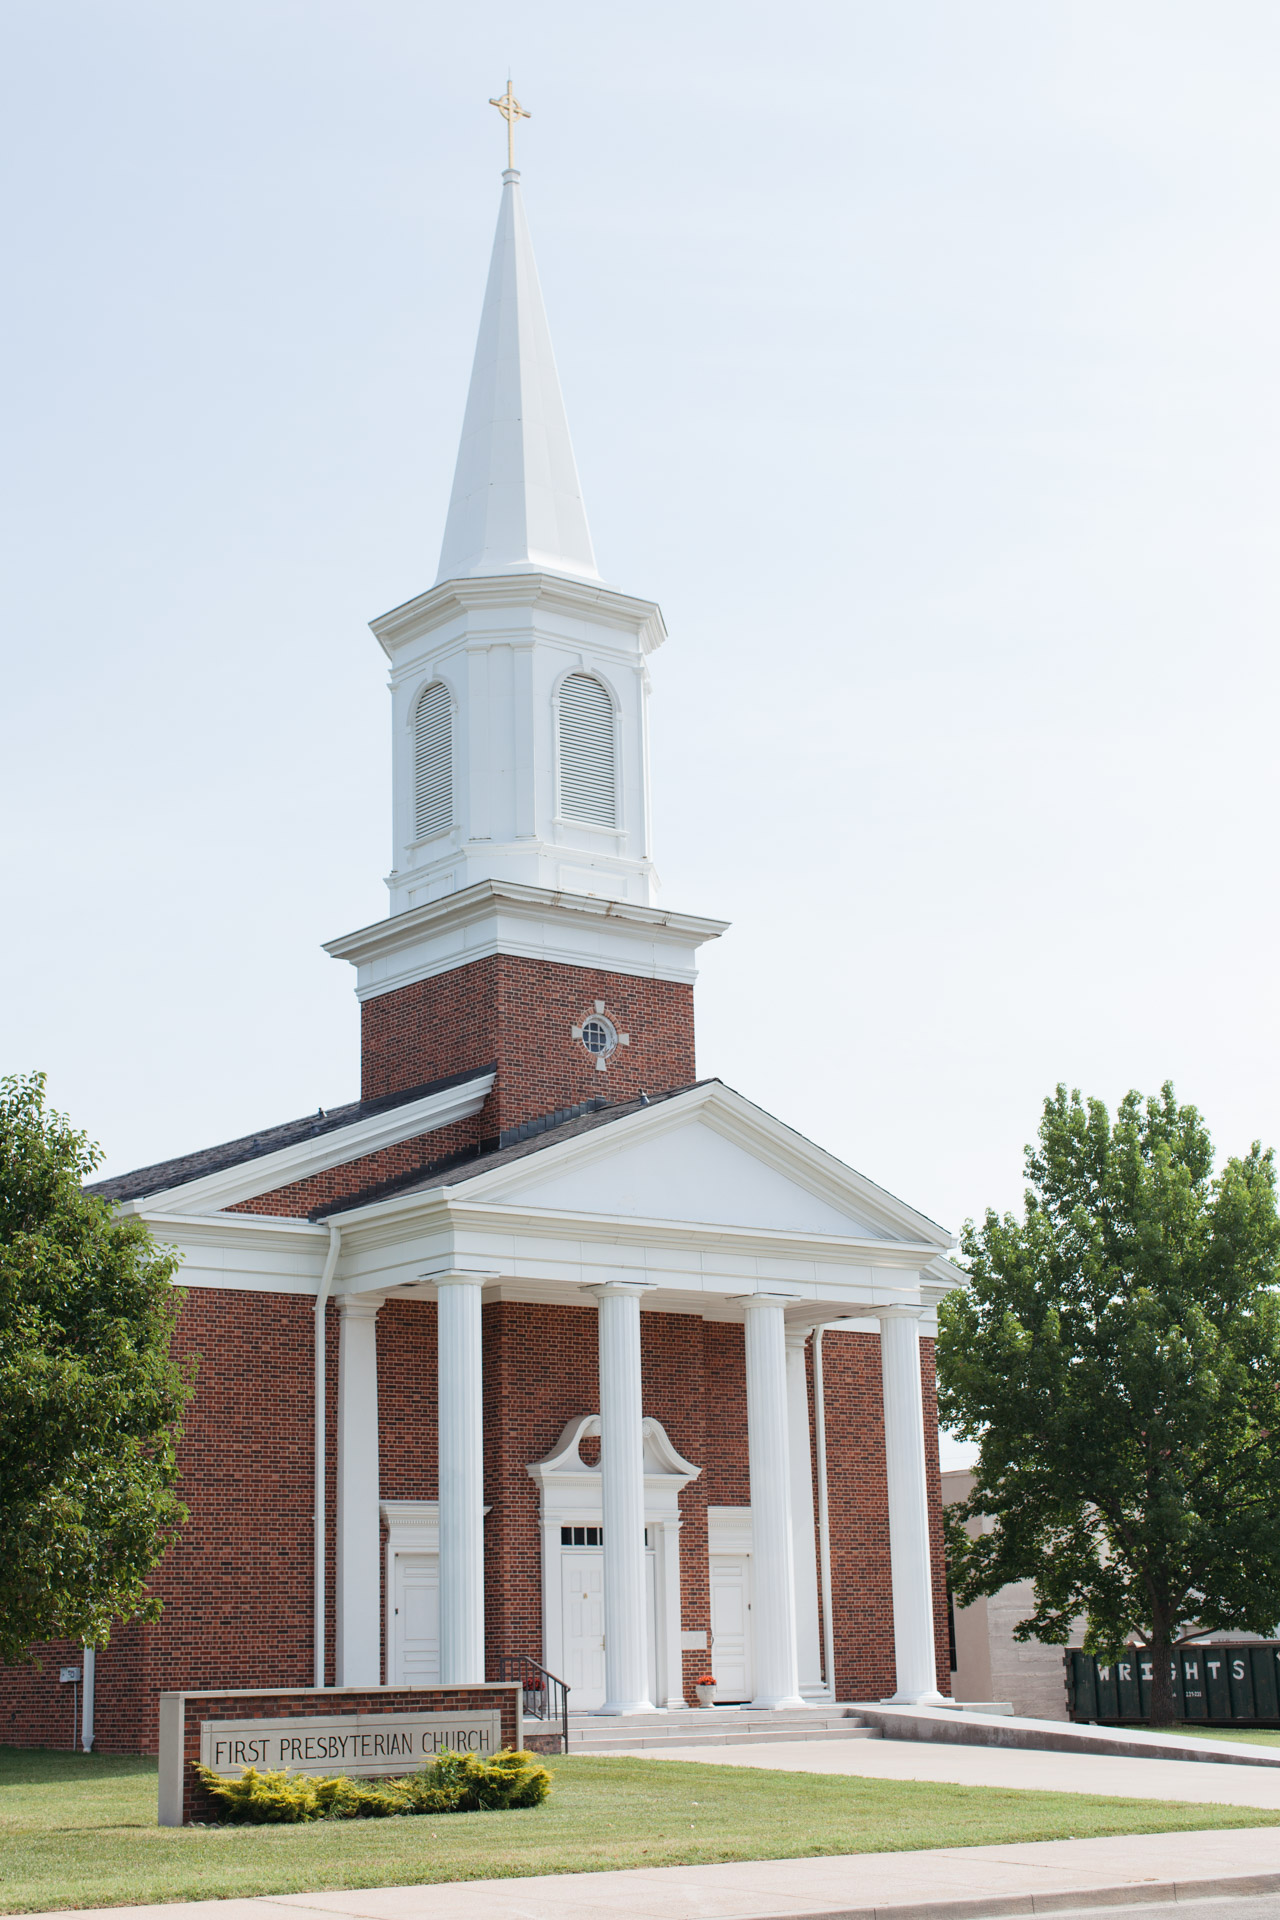 First Presbyterian Church Joplin - Contact FPC Joplin